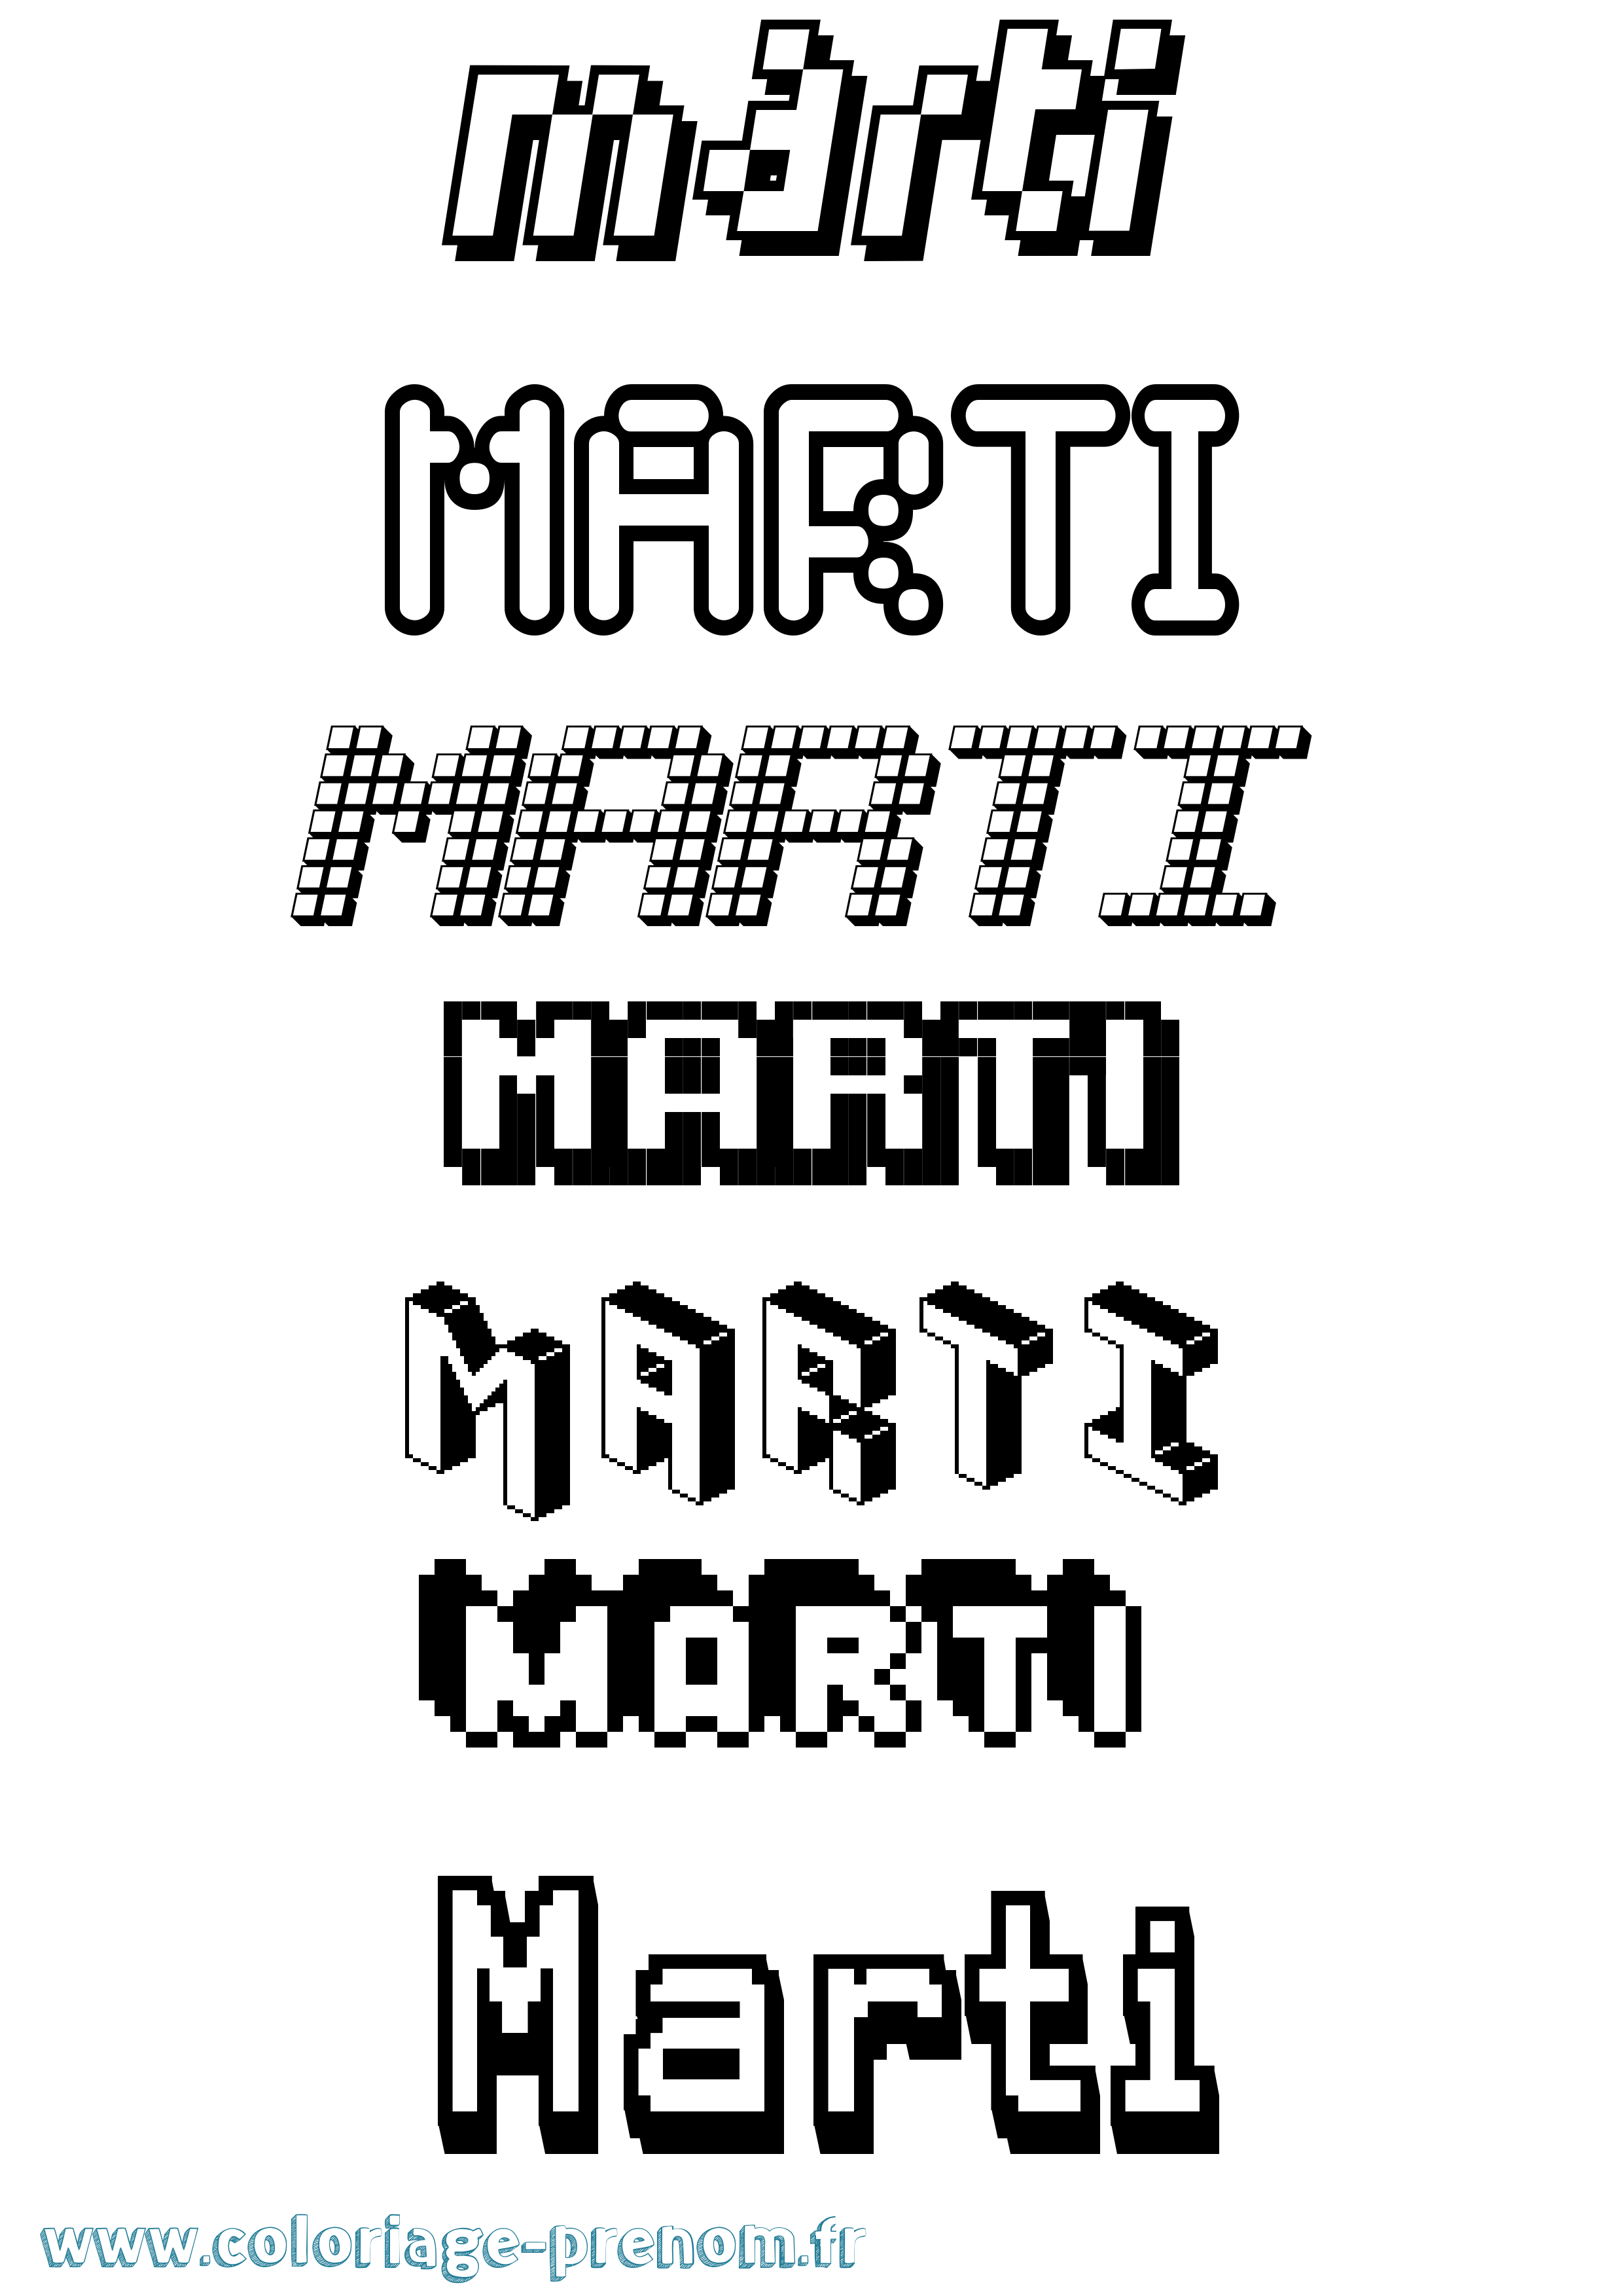 Coloriage prénom Marti Pixel